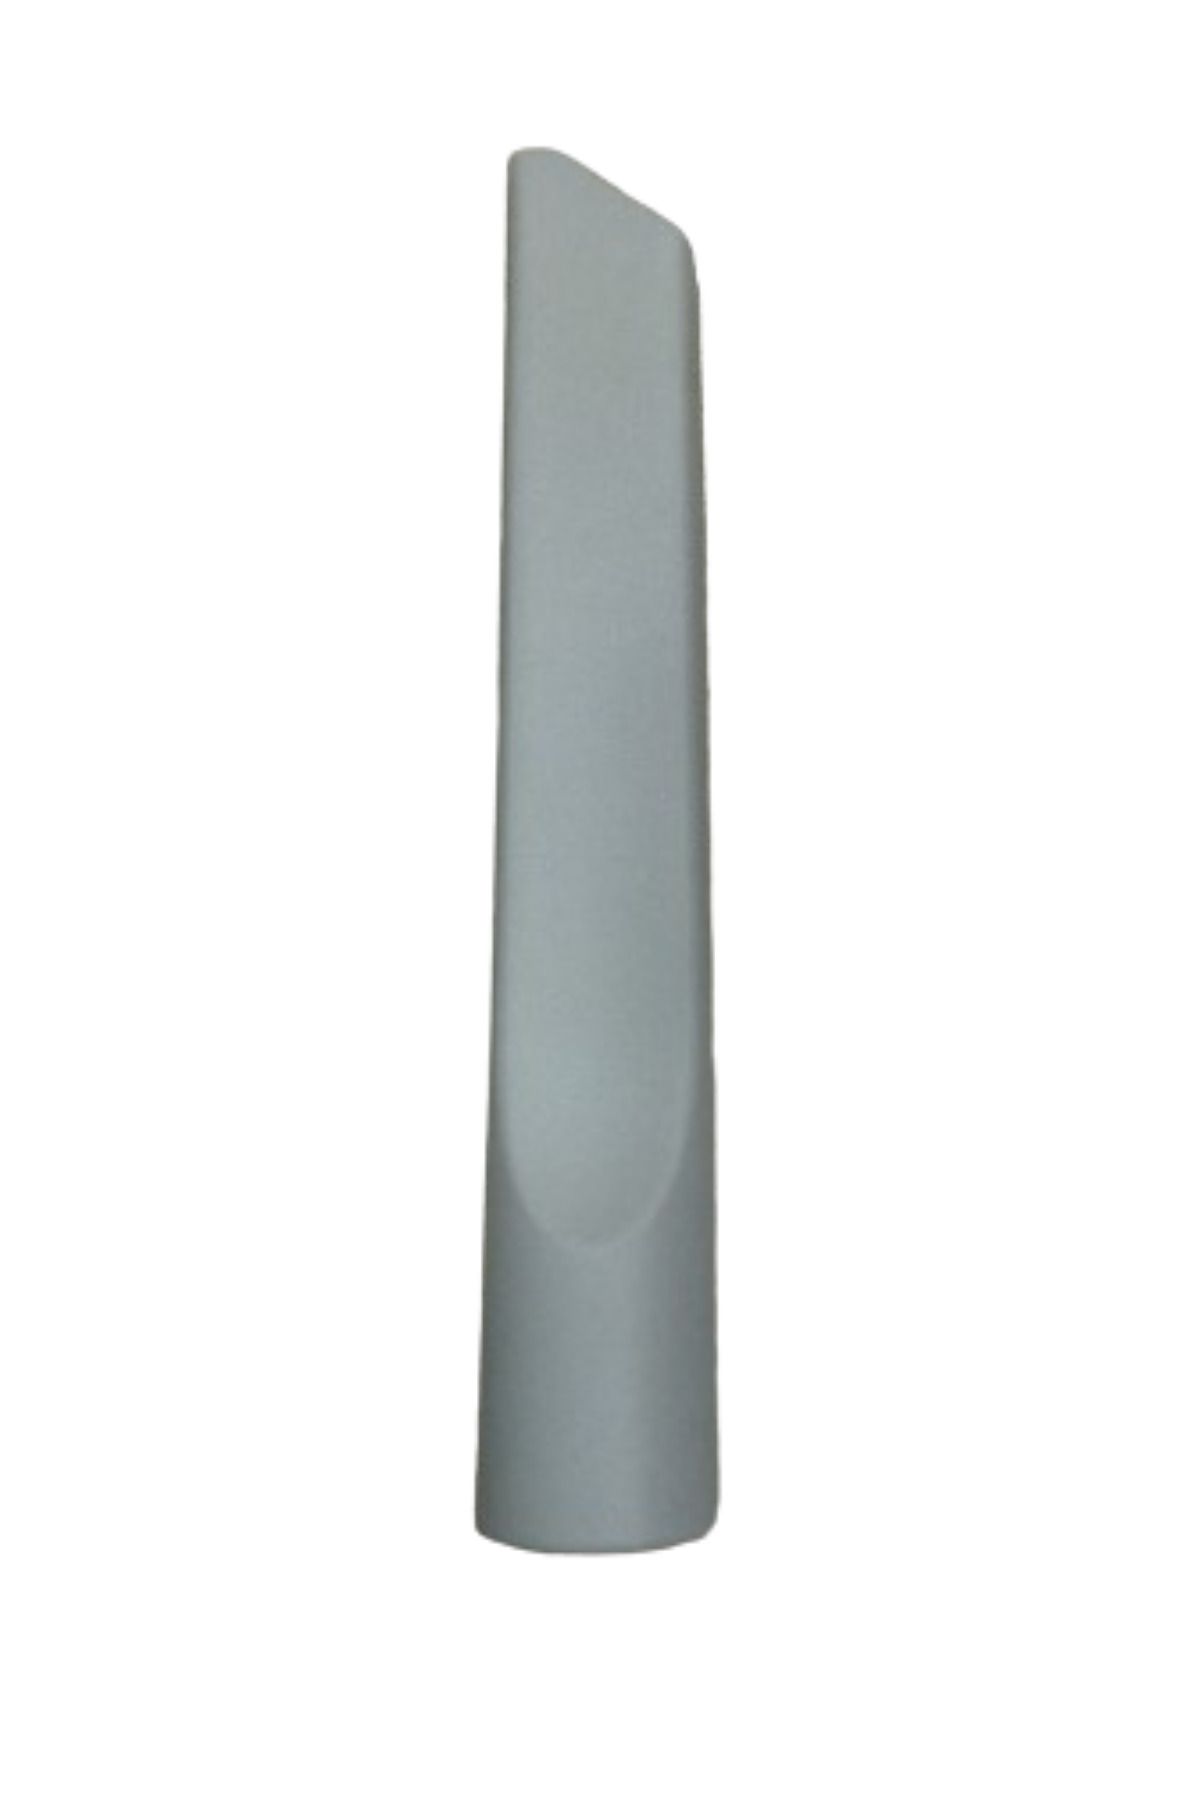 Hotpoint Sl B20 Aa0 Süpürge Koltuk Arası Düz Emici Başlık Gri Renk(22,5 cm)